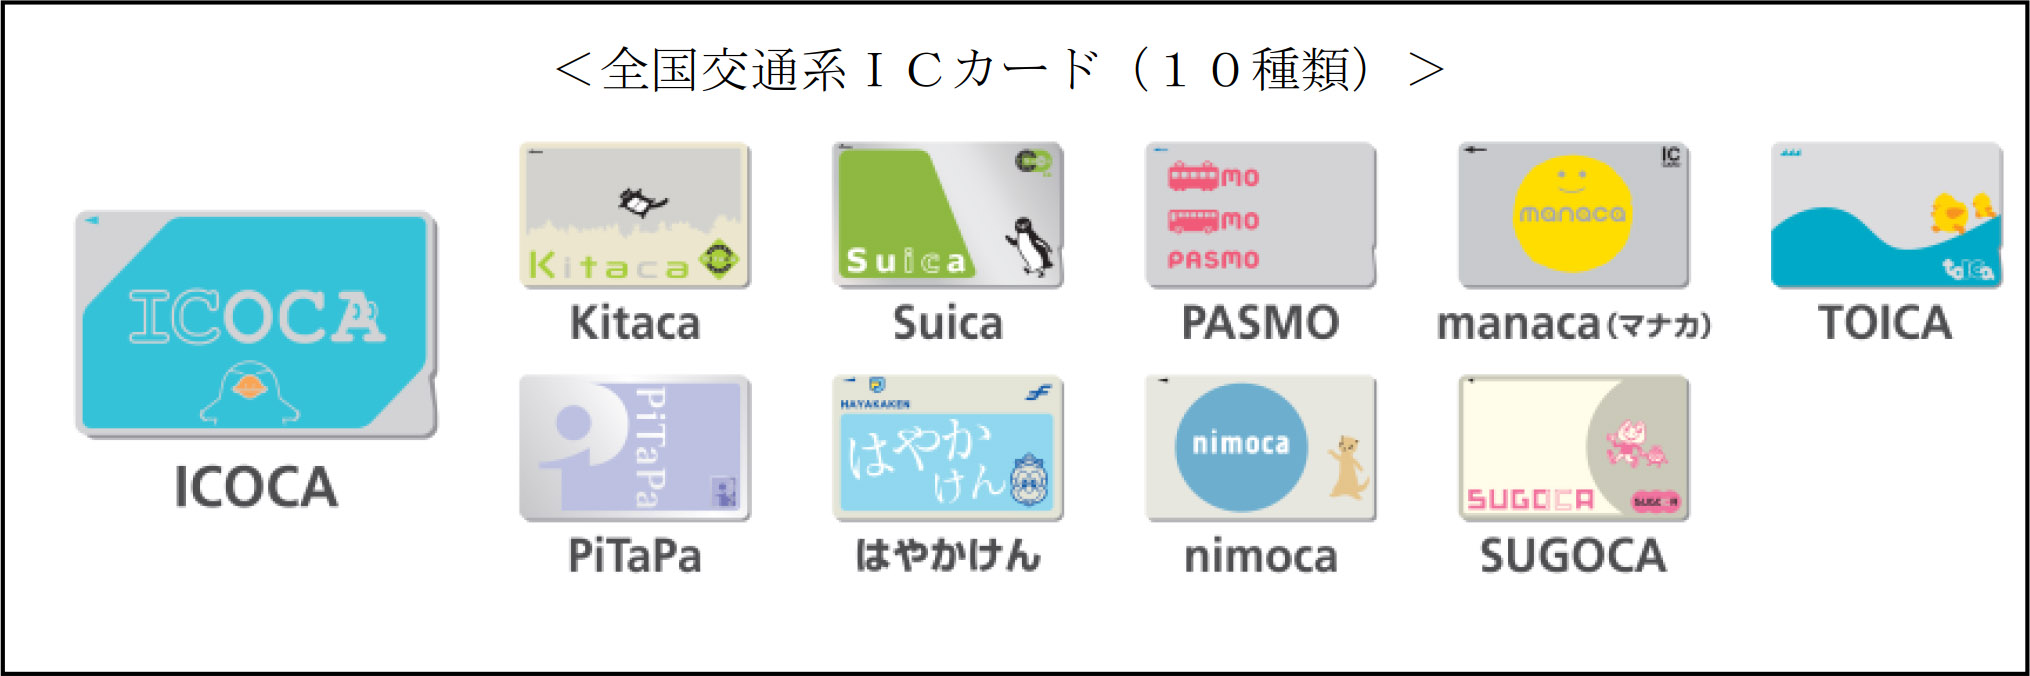 富山地鉄、市内電車がICOCA対応。10月10日から交通系ICカード使用可能に トラベル Watch